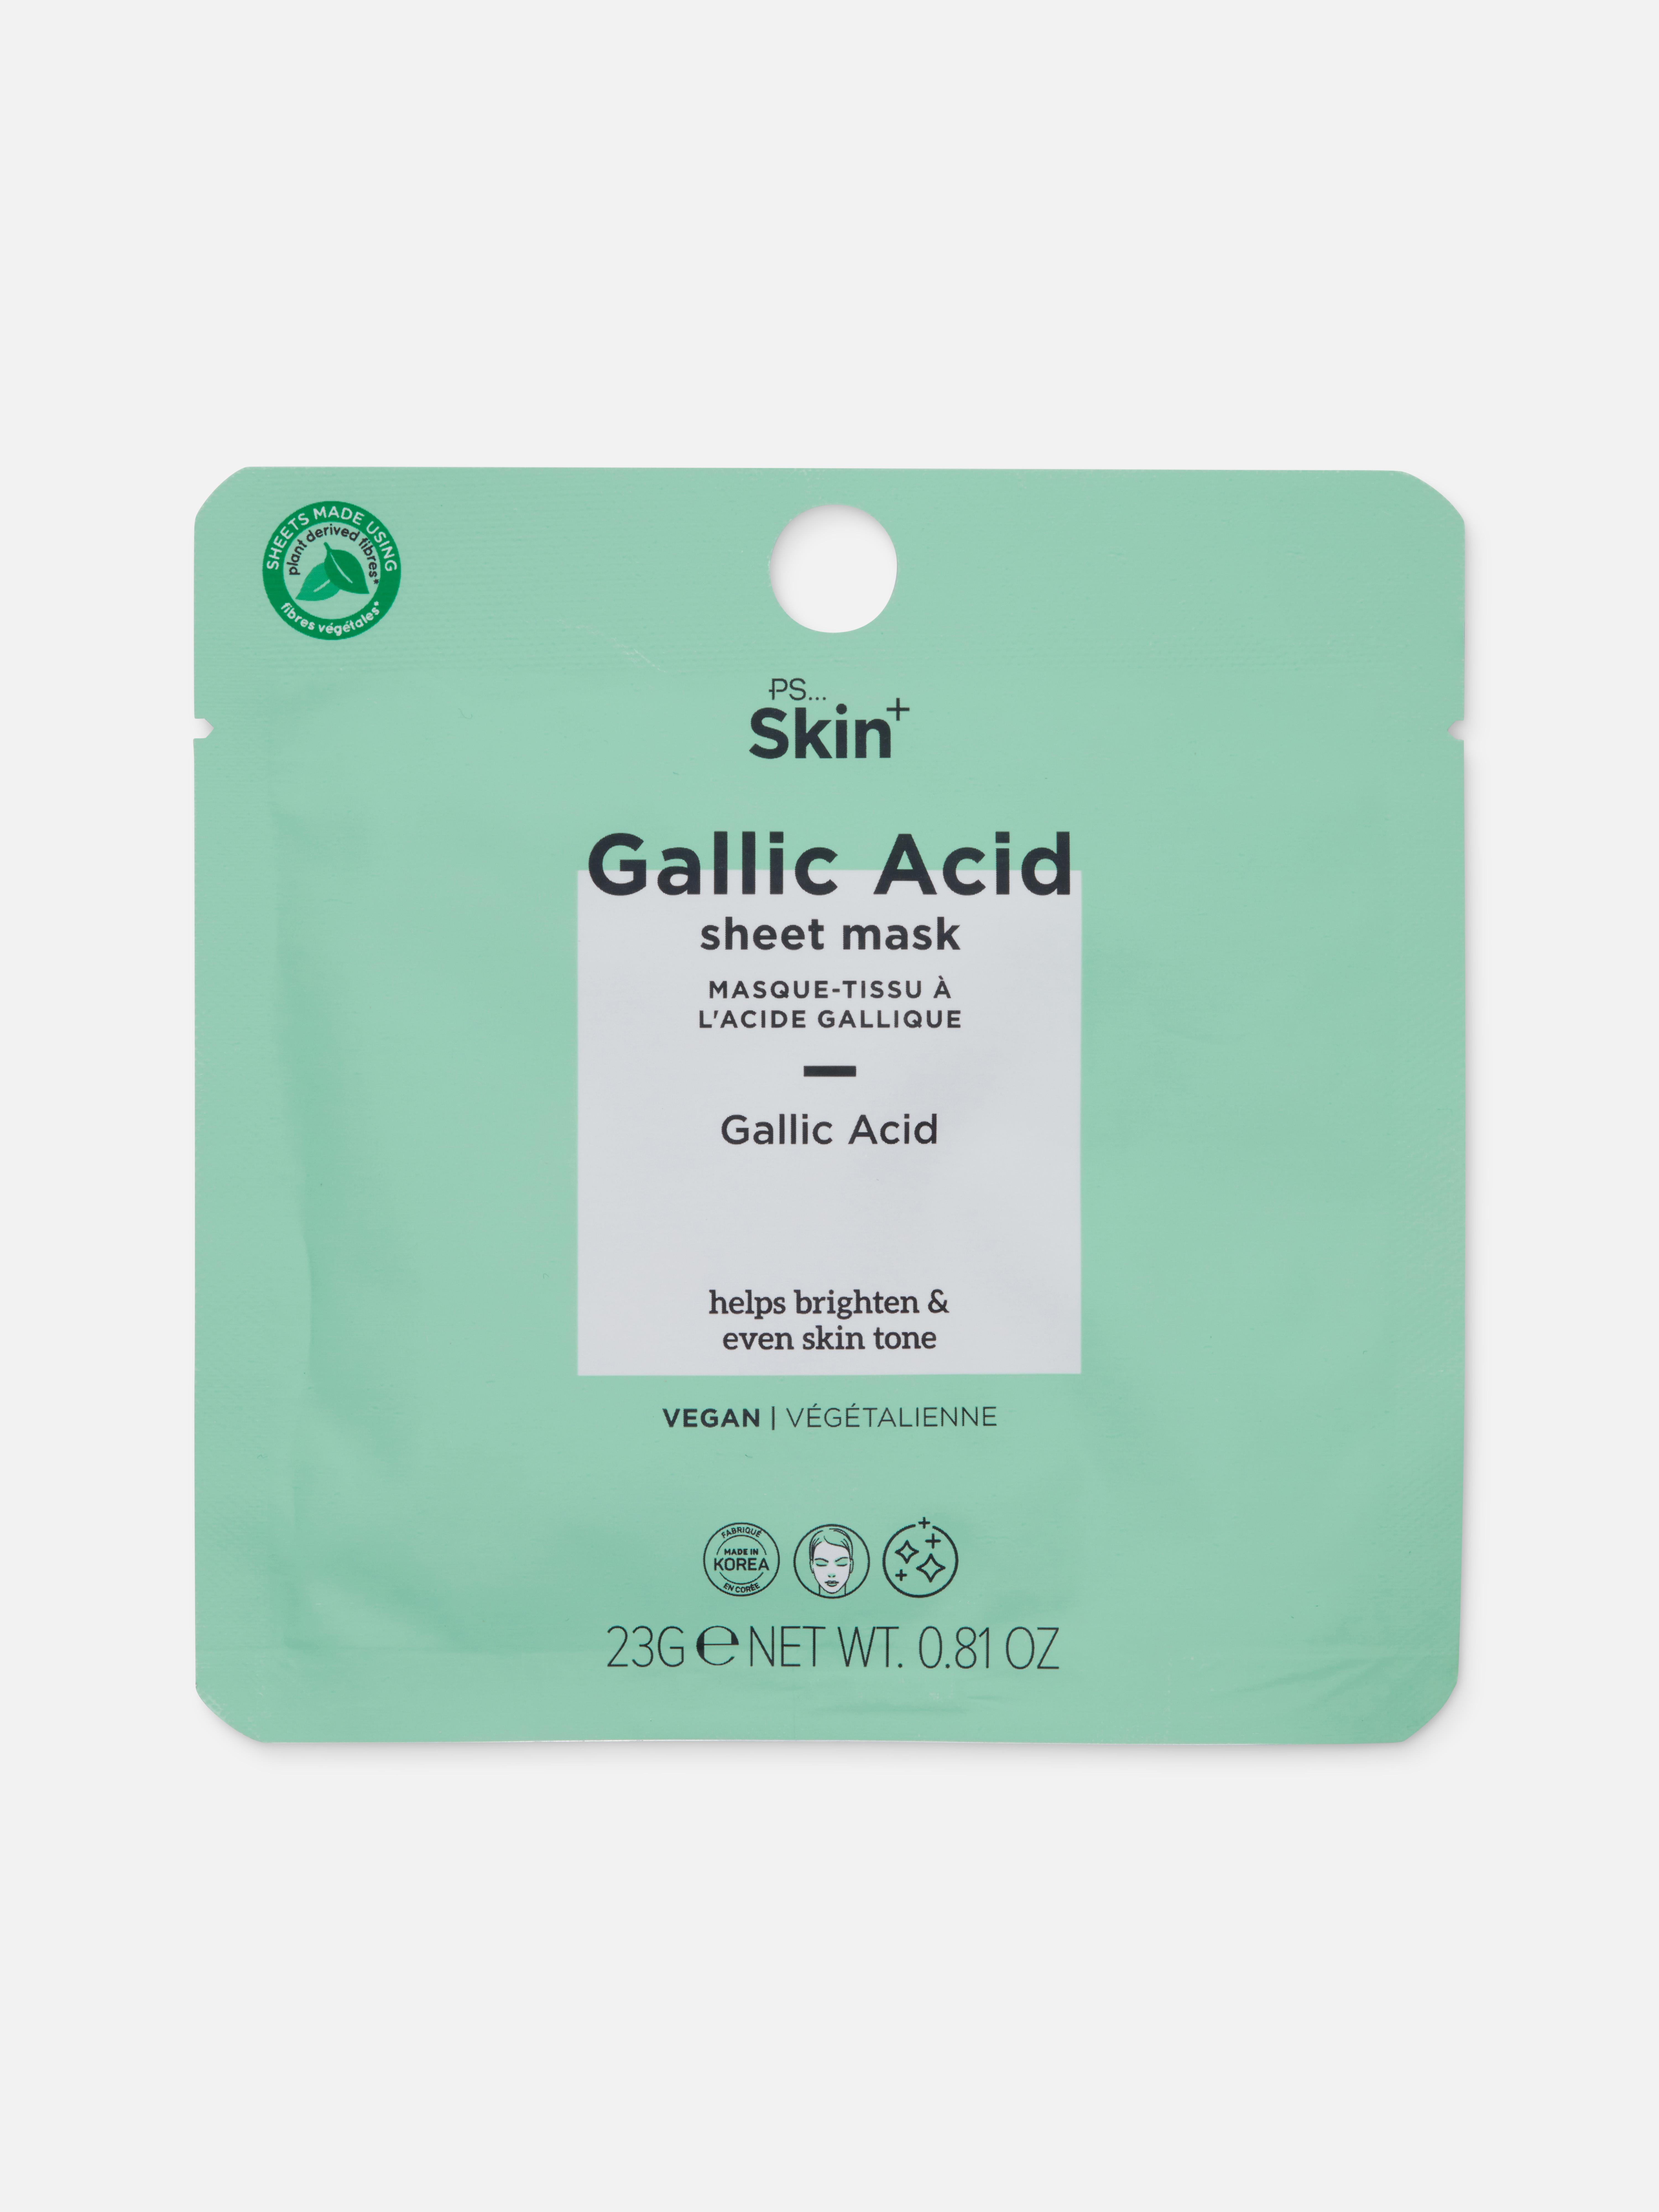 PS... Skin + Gallic Acid Sheet Mask